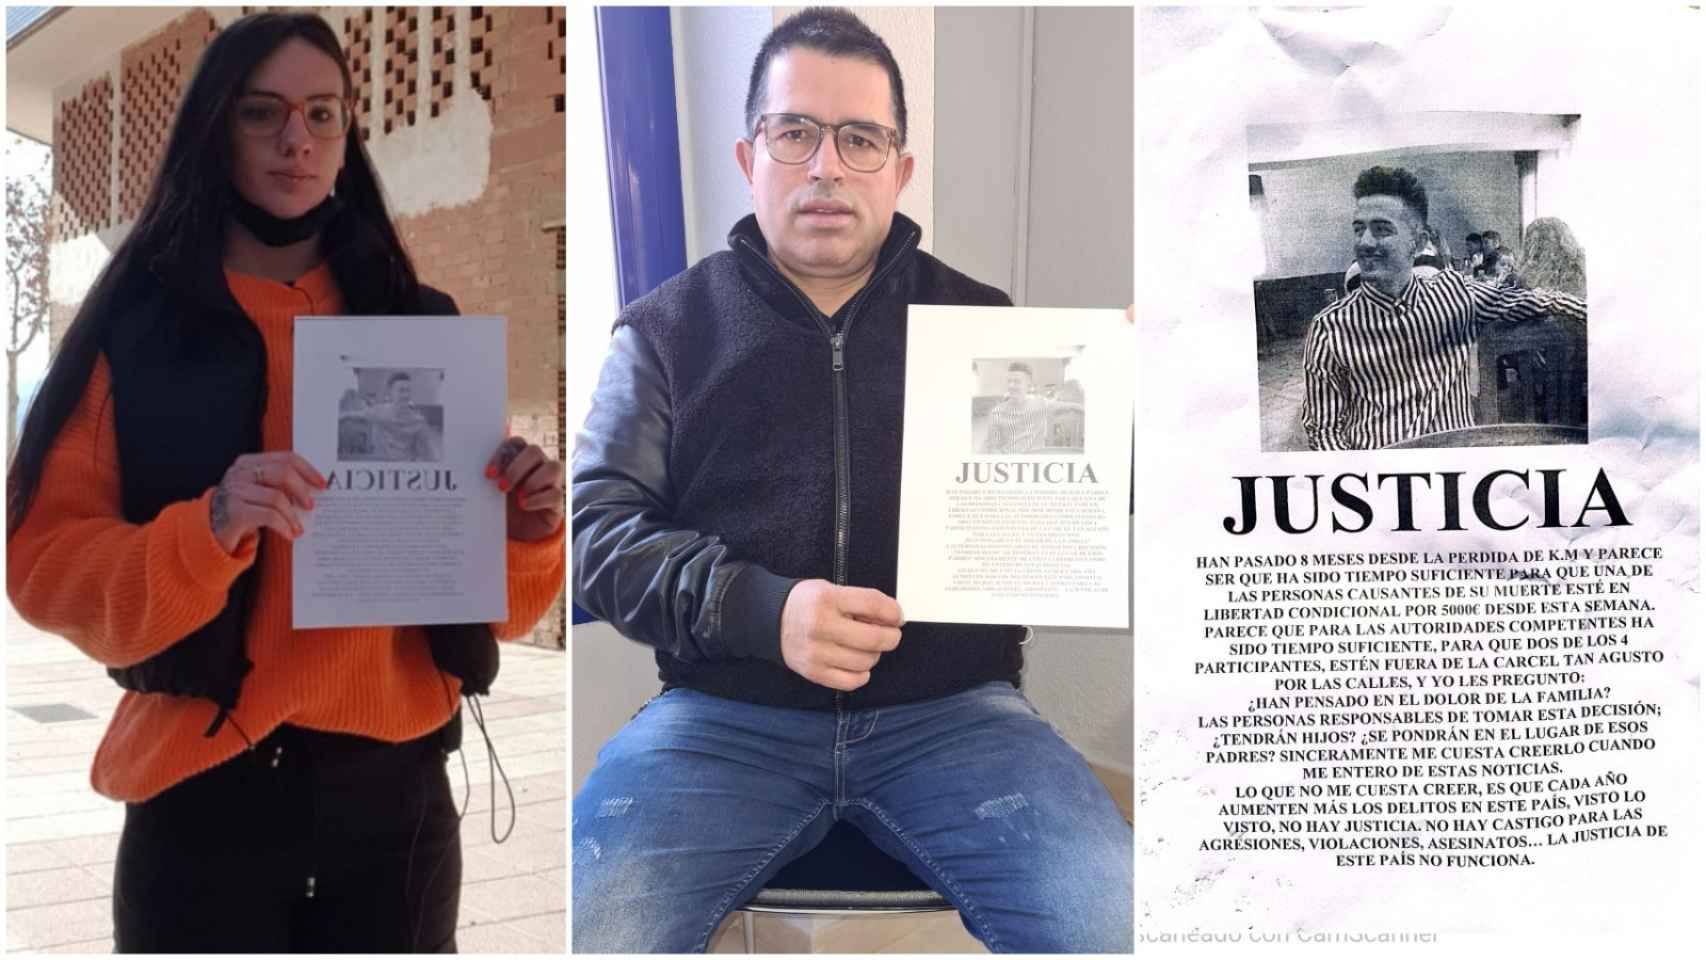 Marta y Humberto mostrando el panfleto que está circulando por Jumilla pidiendo Justicia para Kevin.